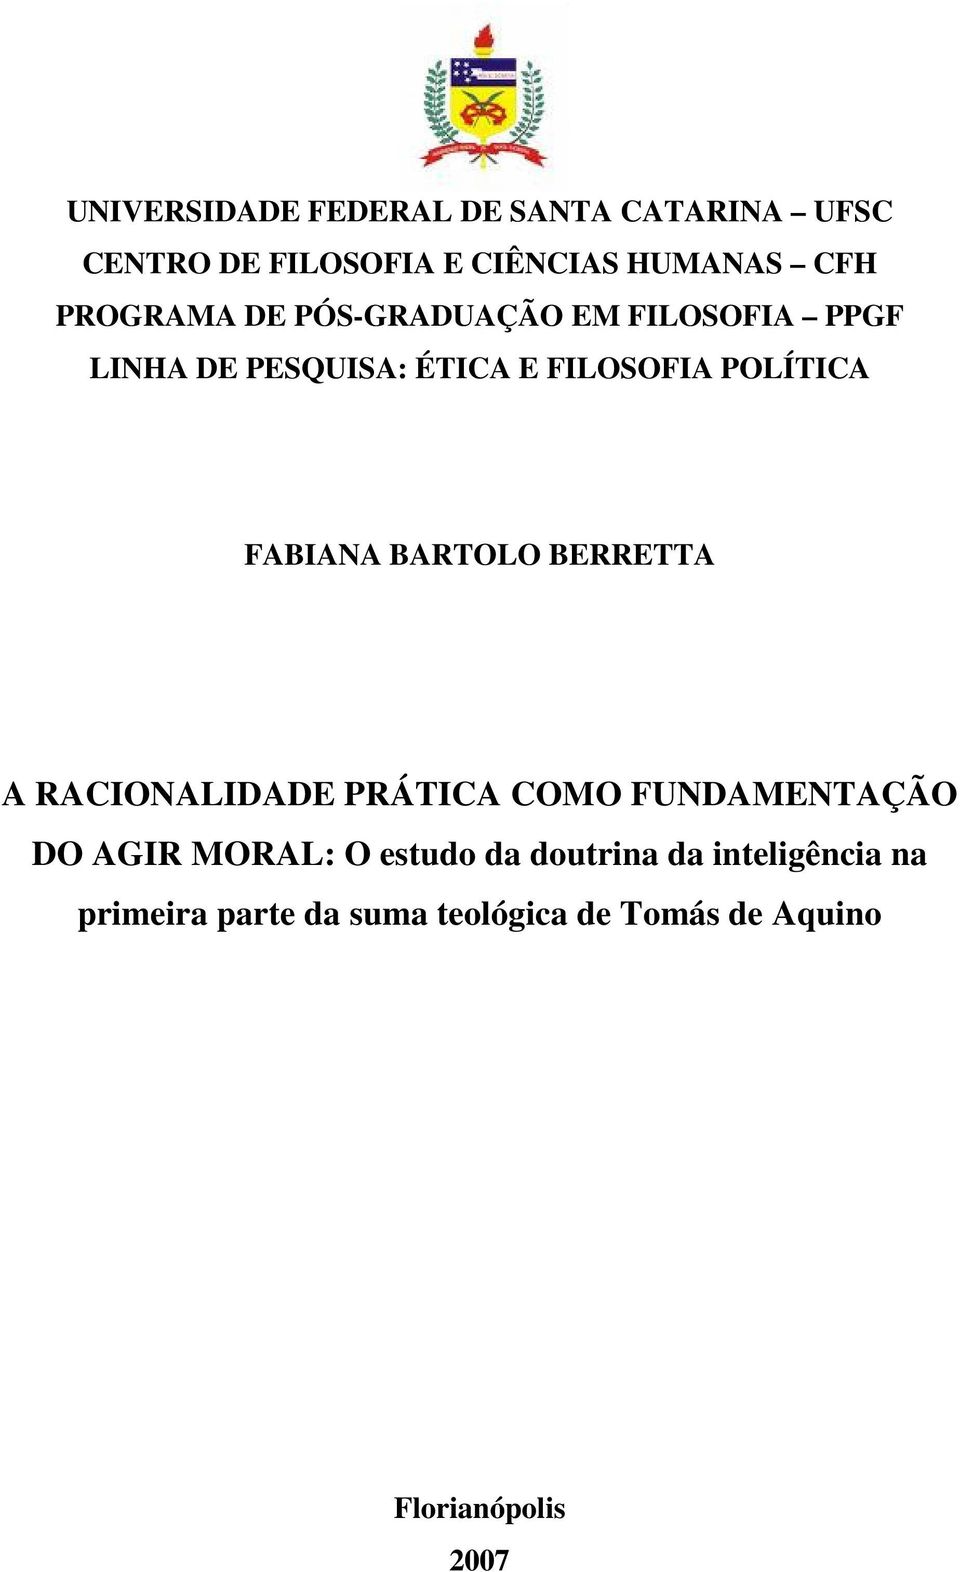 FABIANA BARTOLO BERRETTA A RACIONALIDADE PRÁTICA COMO FUNDAMENTAÇÃO DO AGIR MORAL: O estudo